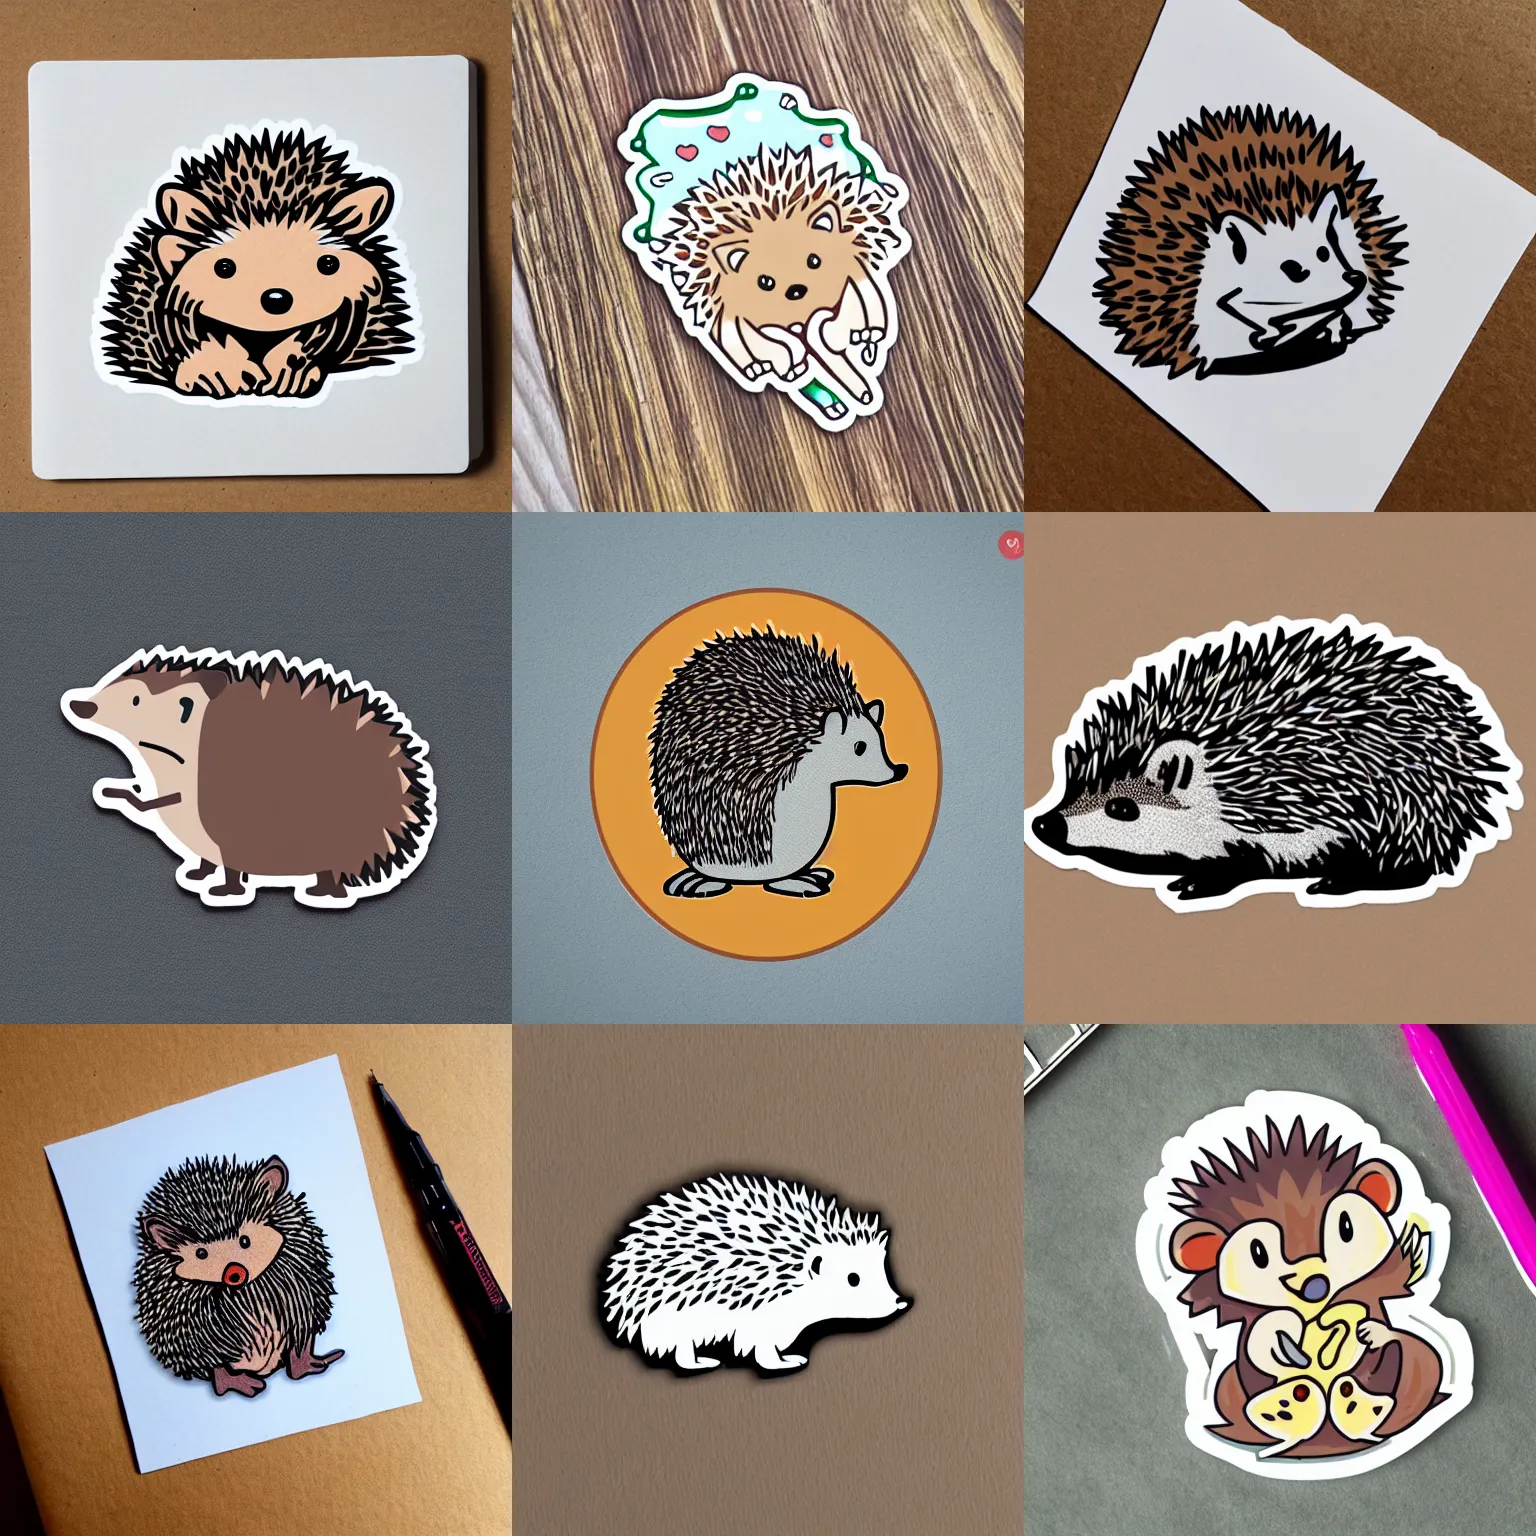 Prompt: hedgehog sticker illustration